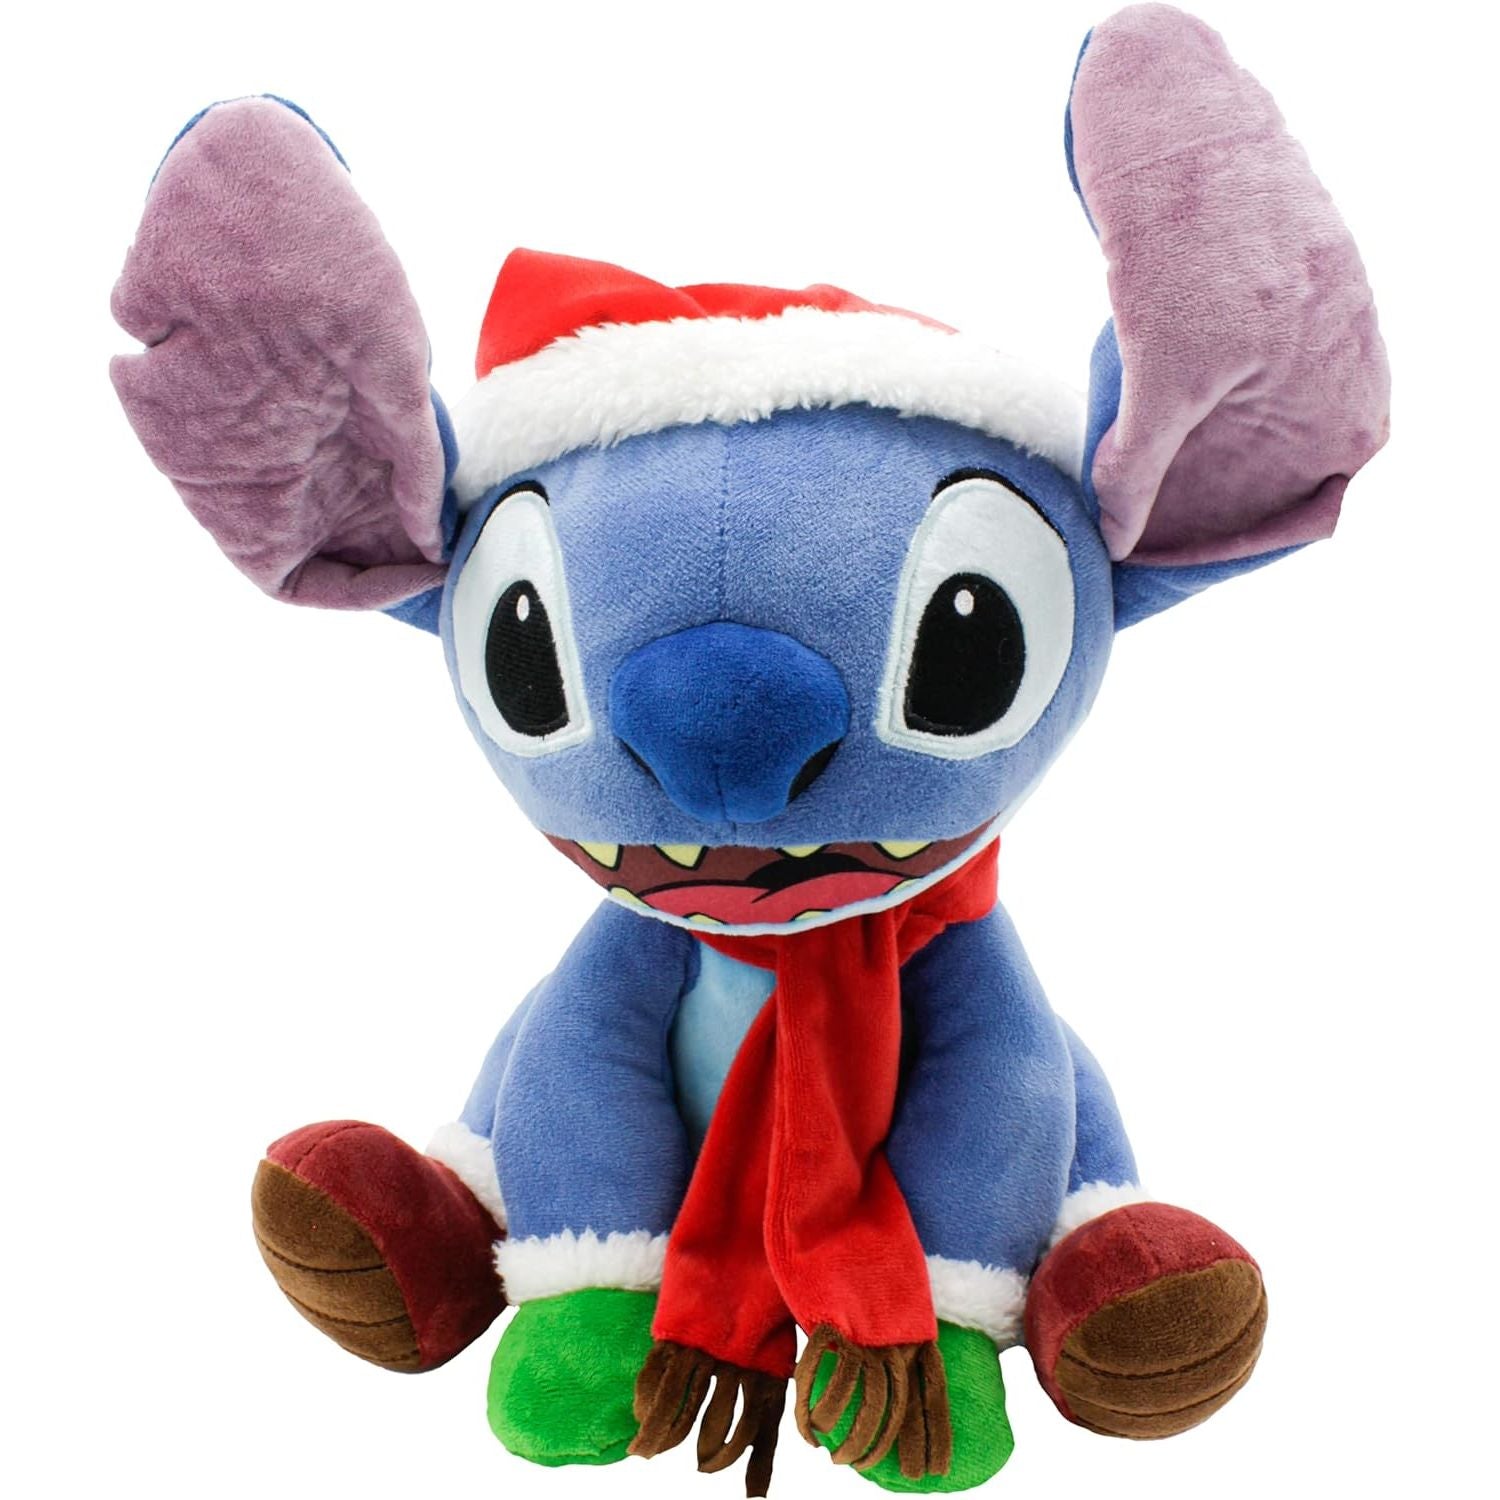  Disney Lilo & Stitch Medium Angel Plush Toy - 15 3/4in